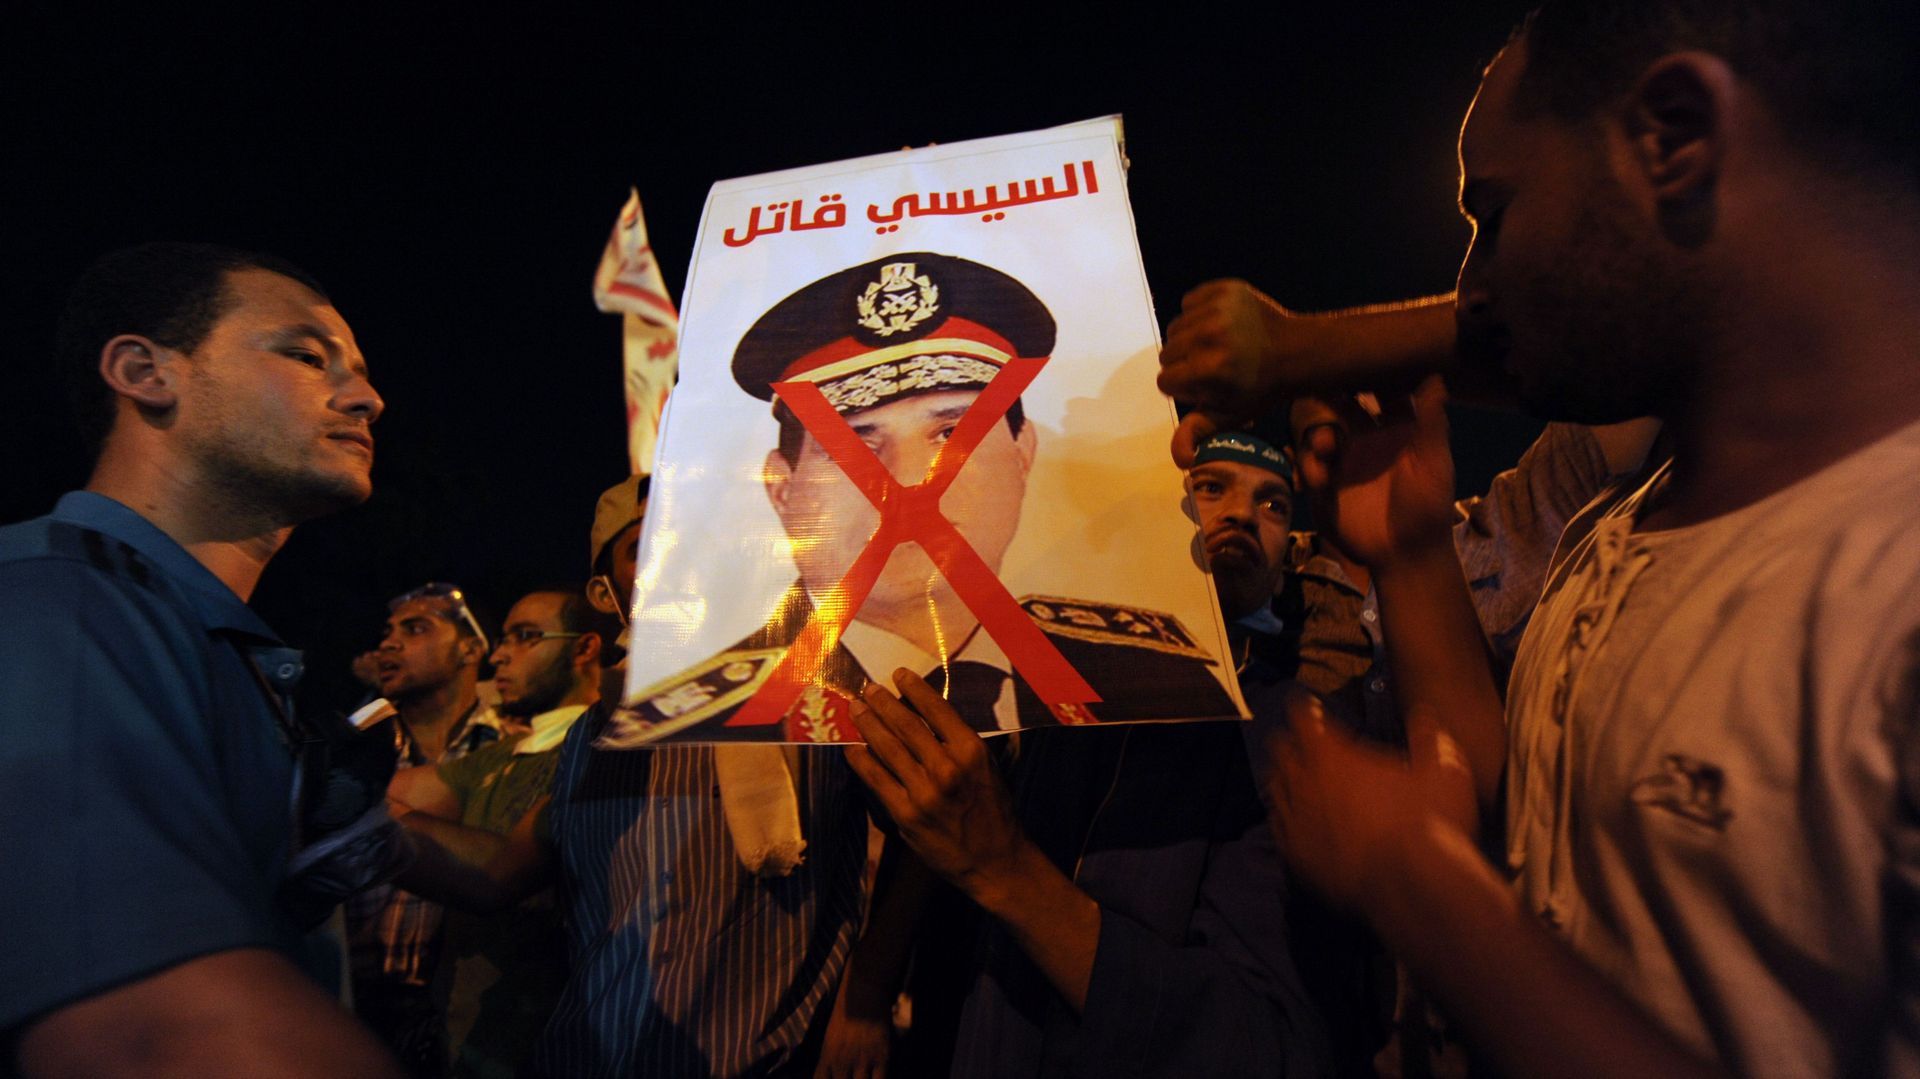 En Egypte, c'est maintenant dans des affrontements violents que s'opposent les camps opposés des pro-Morsi et des supporters de l'armée